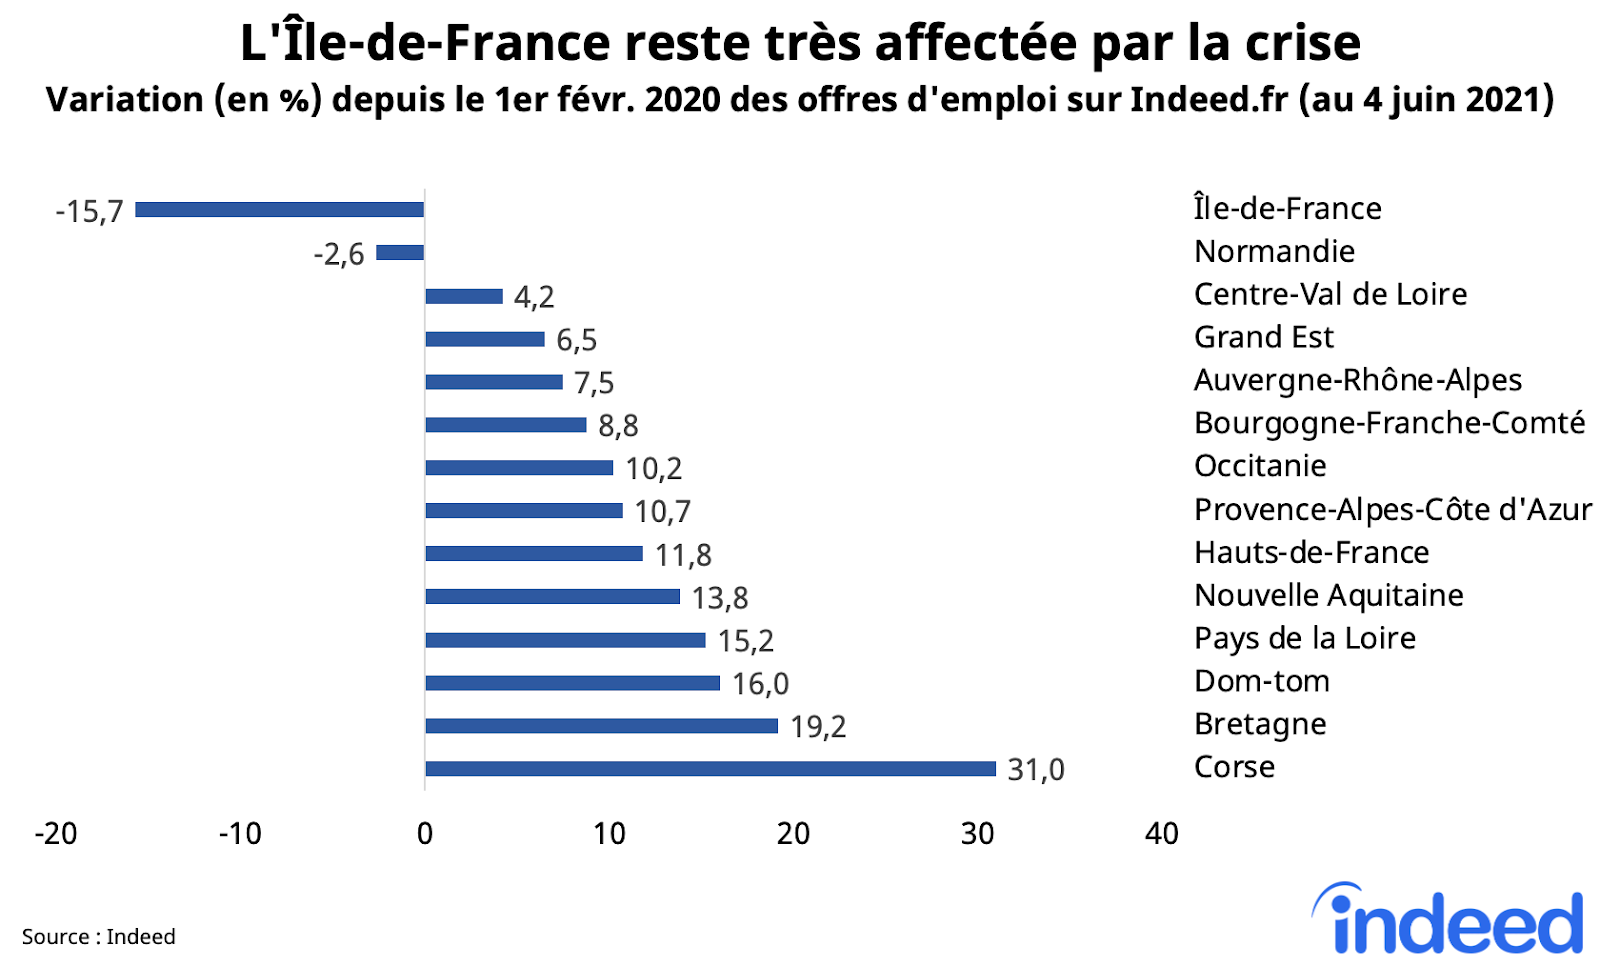 L'Ile-de-France reste tres affectee par la crise